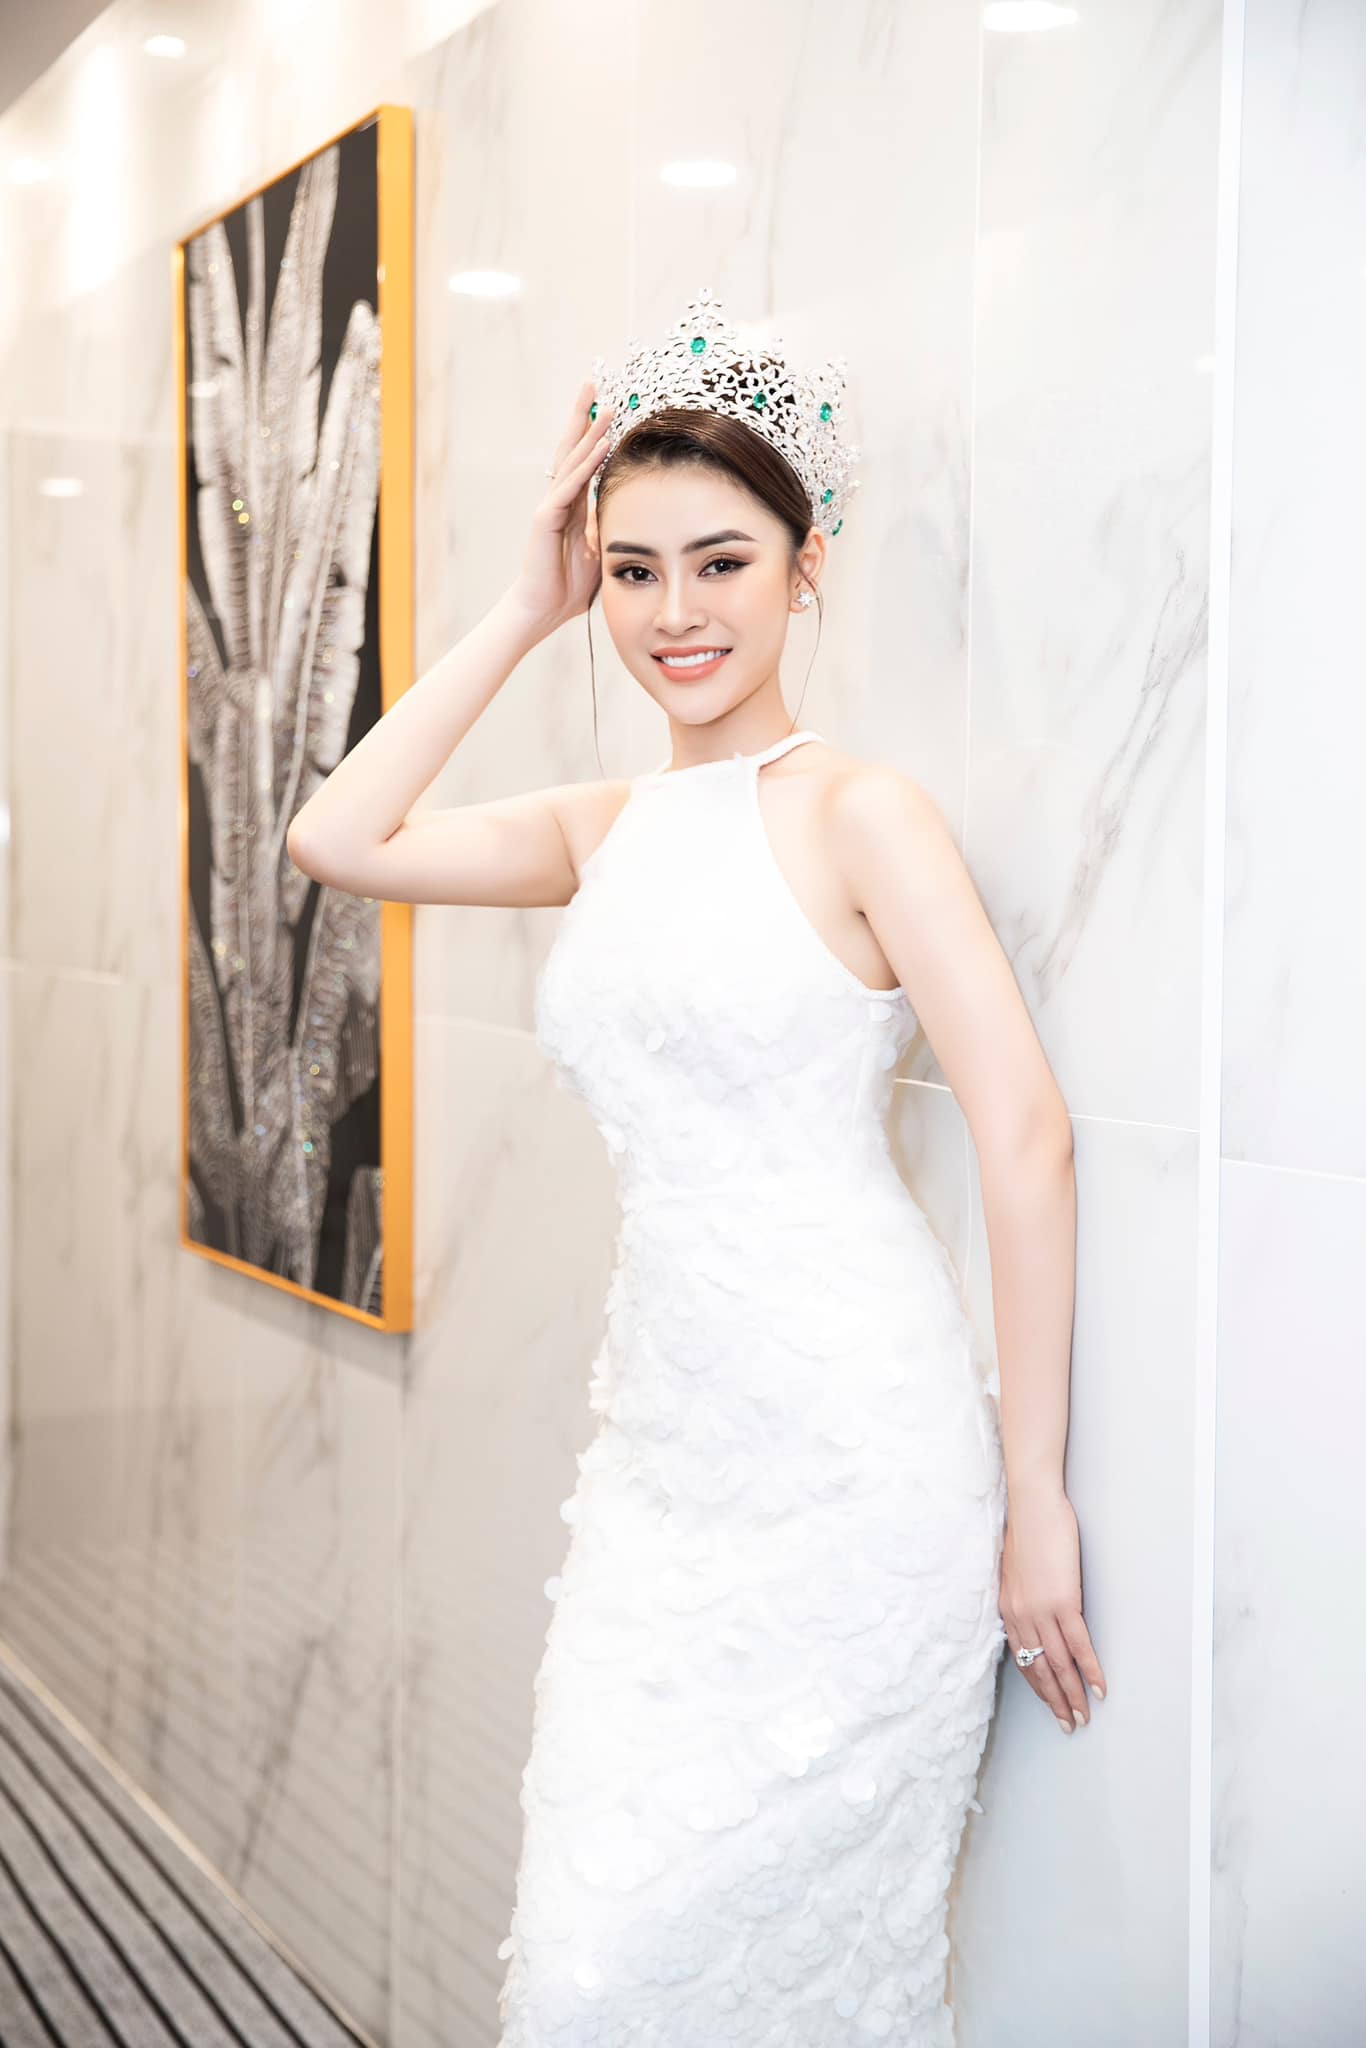 Nhan sắc xinh đẹp, lôi cuốn của một ứng viên sáng giá bất ngờ rút khỏi Miss Universe Vietnam 2023 gây tiếc nuối - Ảnh 5.